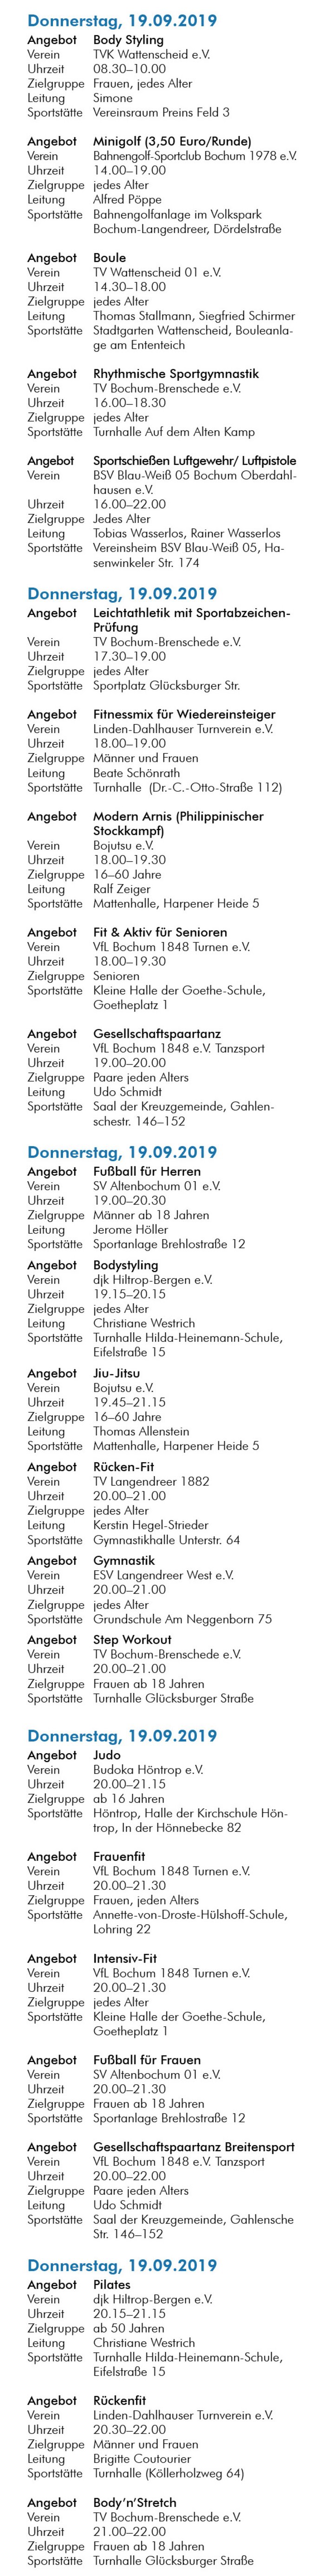 Web-Aufbereitung Sportwoche 2019_Donnerstag 19-09.jpg